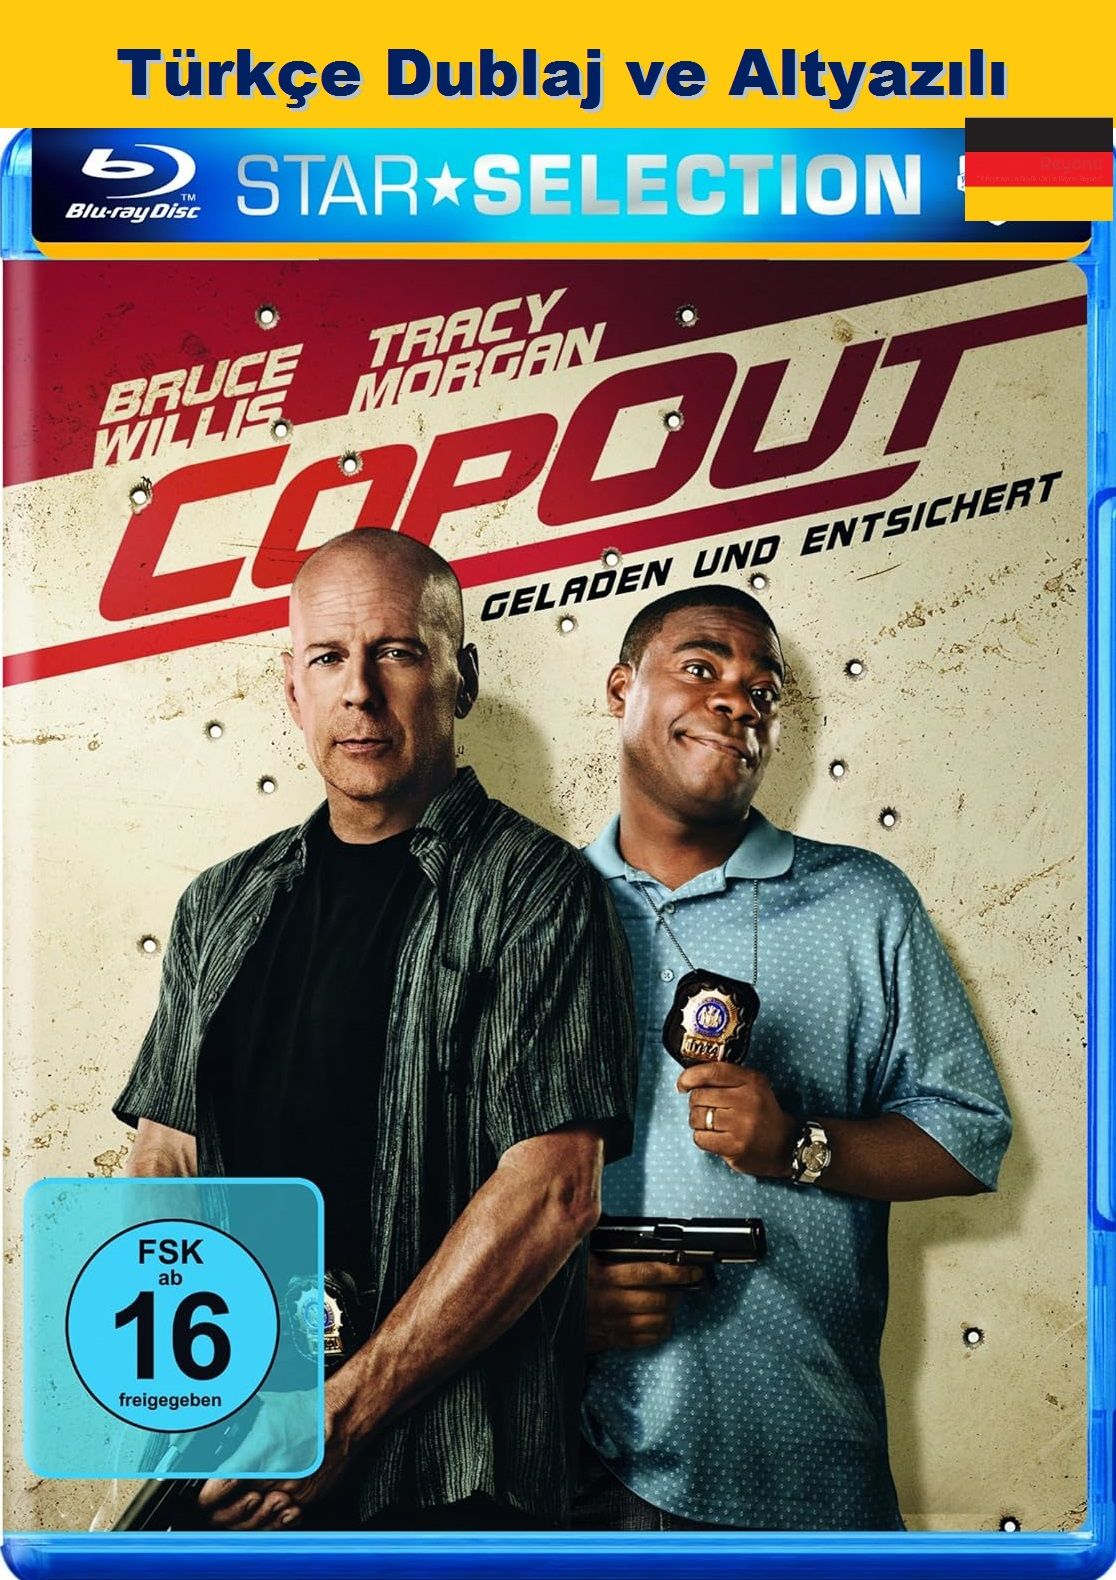 Cop Out - Zorlu Takip  Blu-Ray